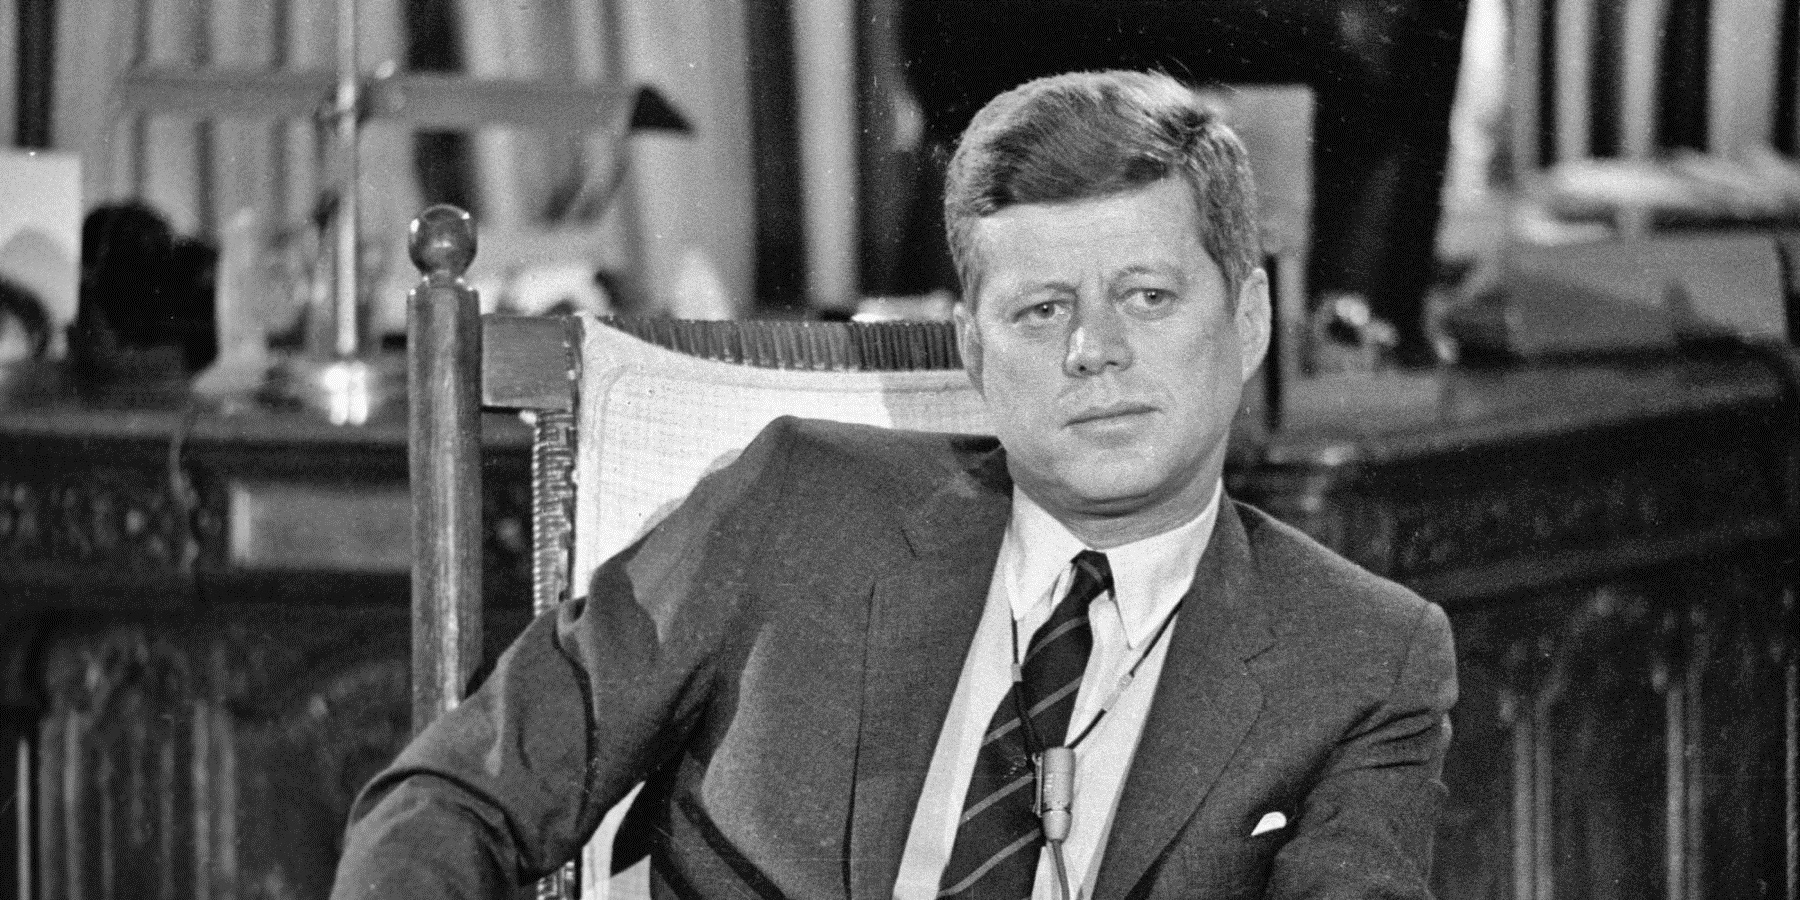 Venti cinque anni d’attesa, pubblicati gli ultimi documenti su assassinio di John F. Kennedy